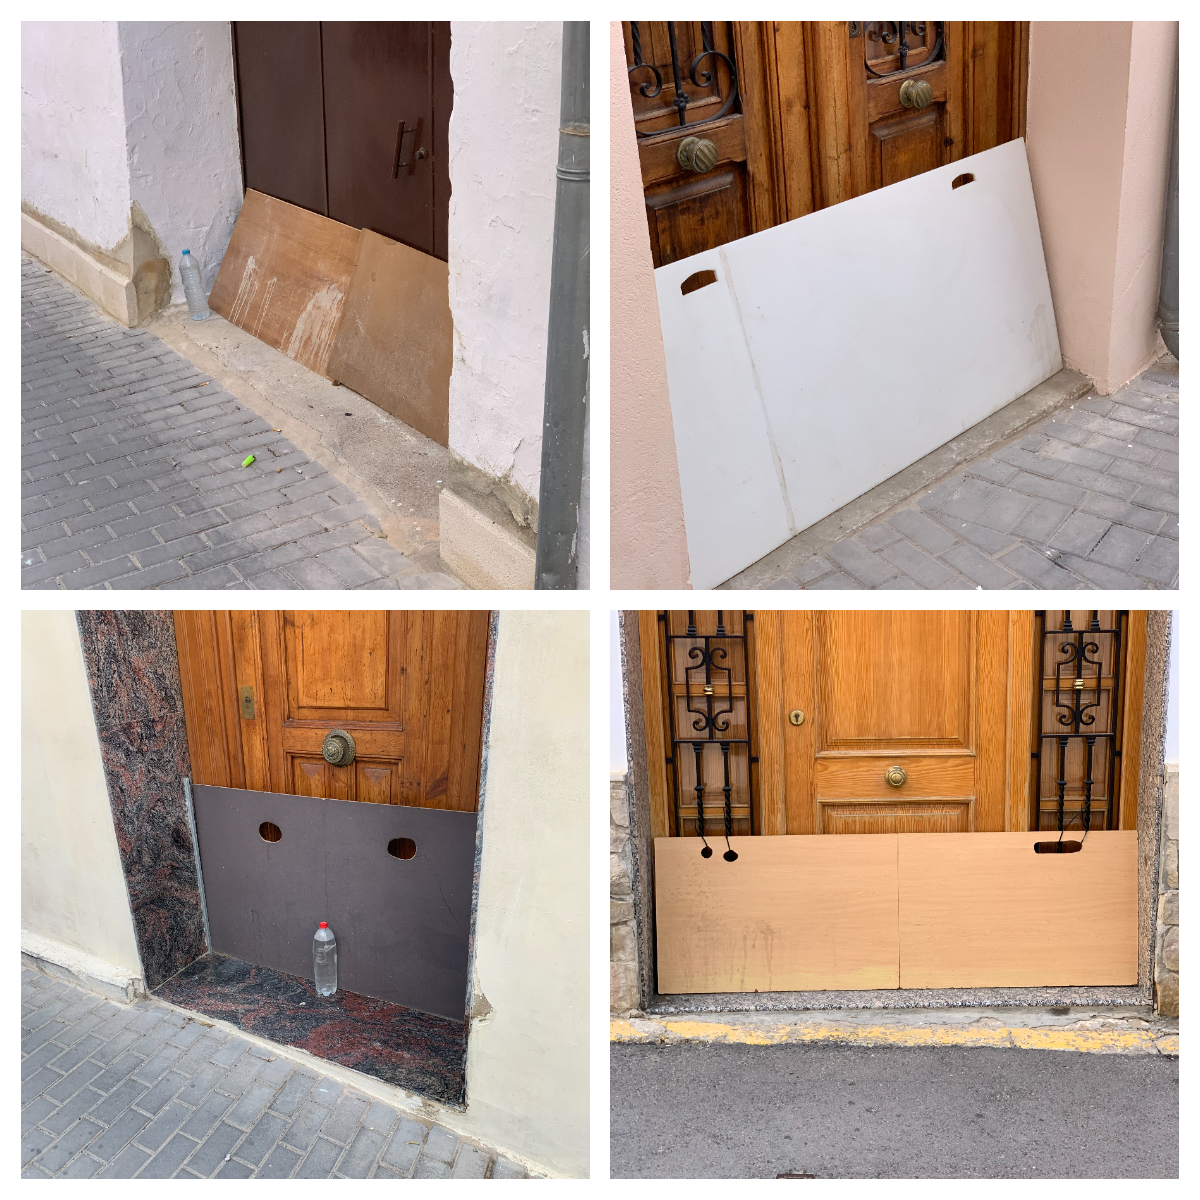 Qu’est-ce que c’est que ces planches en bois/plastique devant les portes ? trouvées dans une petite ville espagnole.